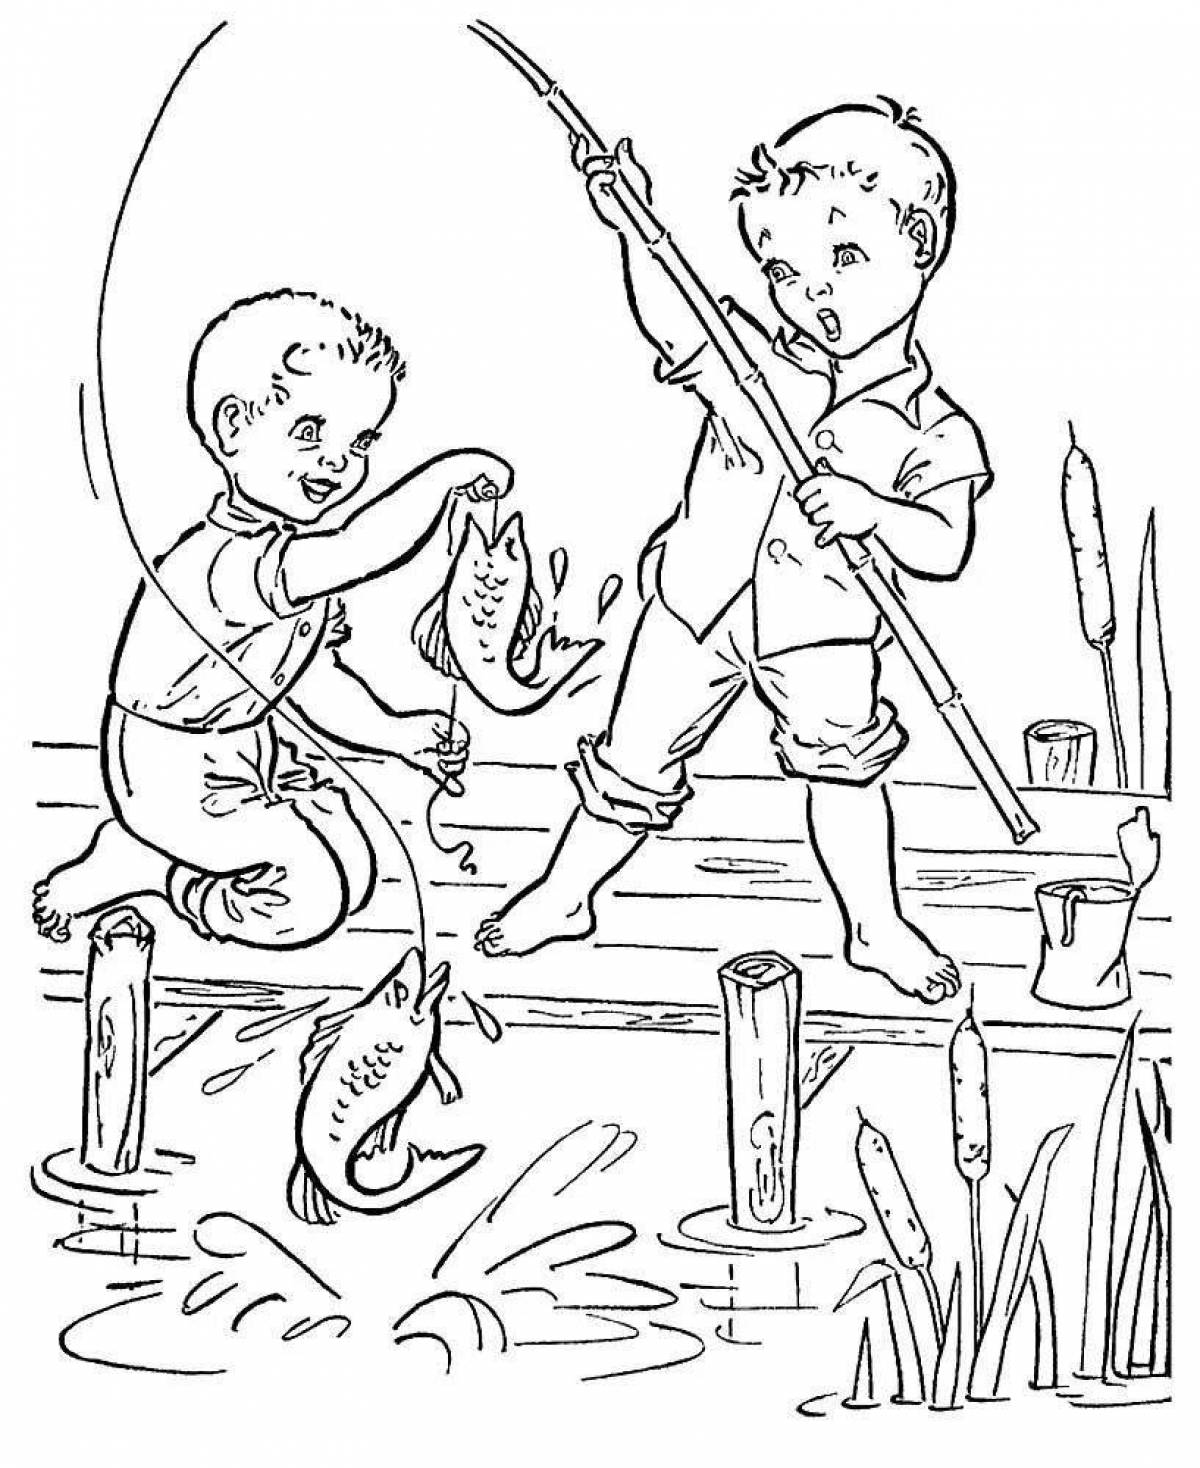 Мальчик наловил жуков всего 8 штук. Рыбалка раскраска для детей. Раскраска мальчик на рыбалке. Раскраска для детей дети рыбачат. Рыбак раскраска для детей.